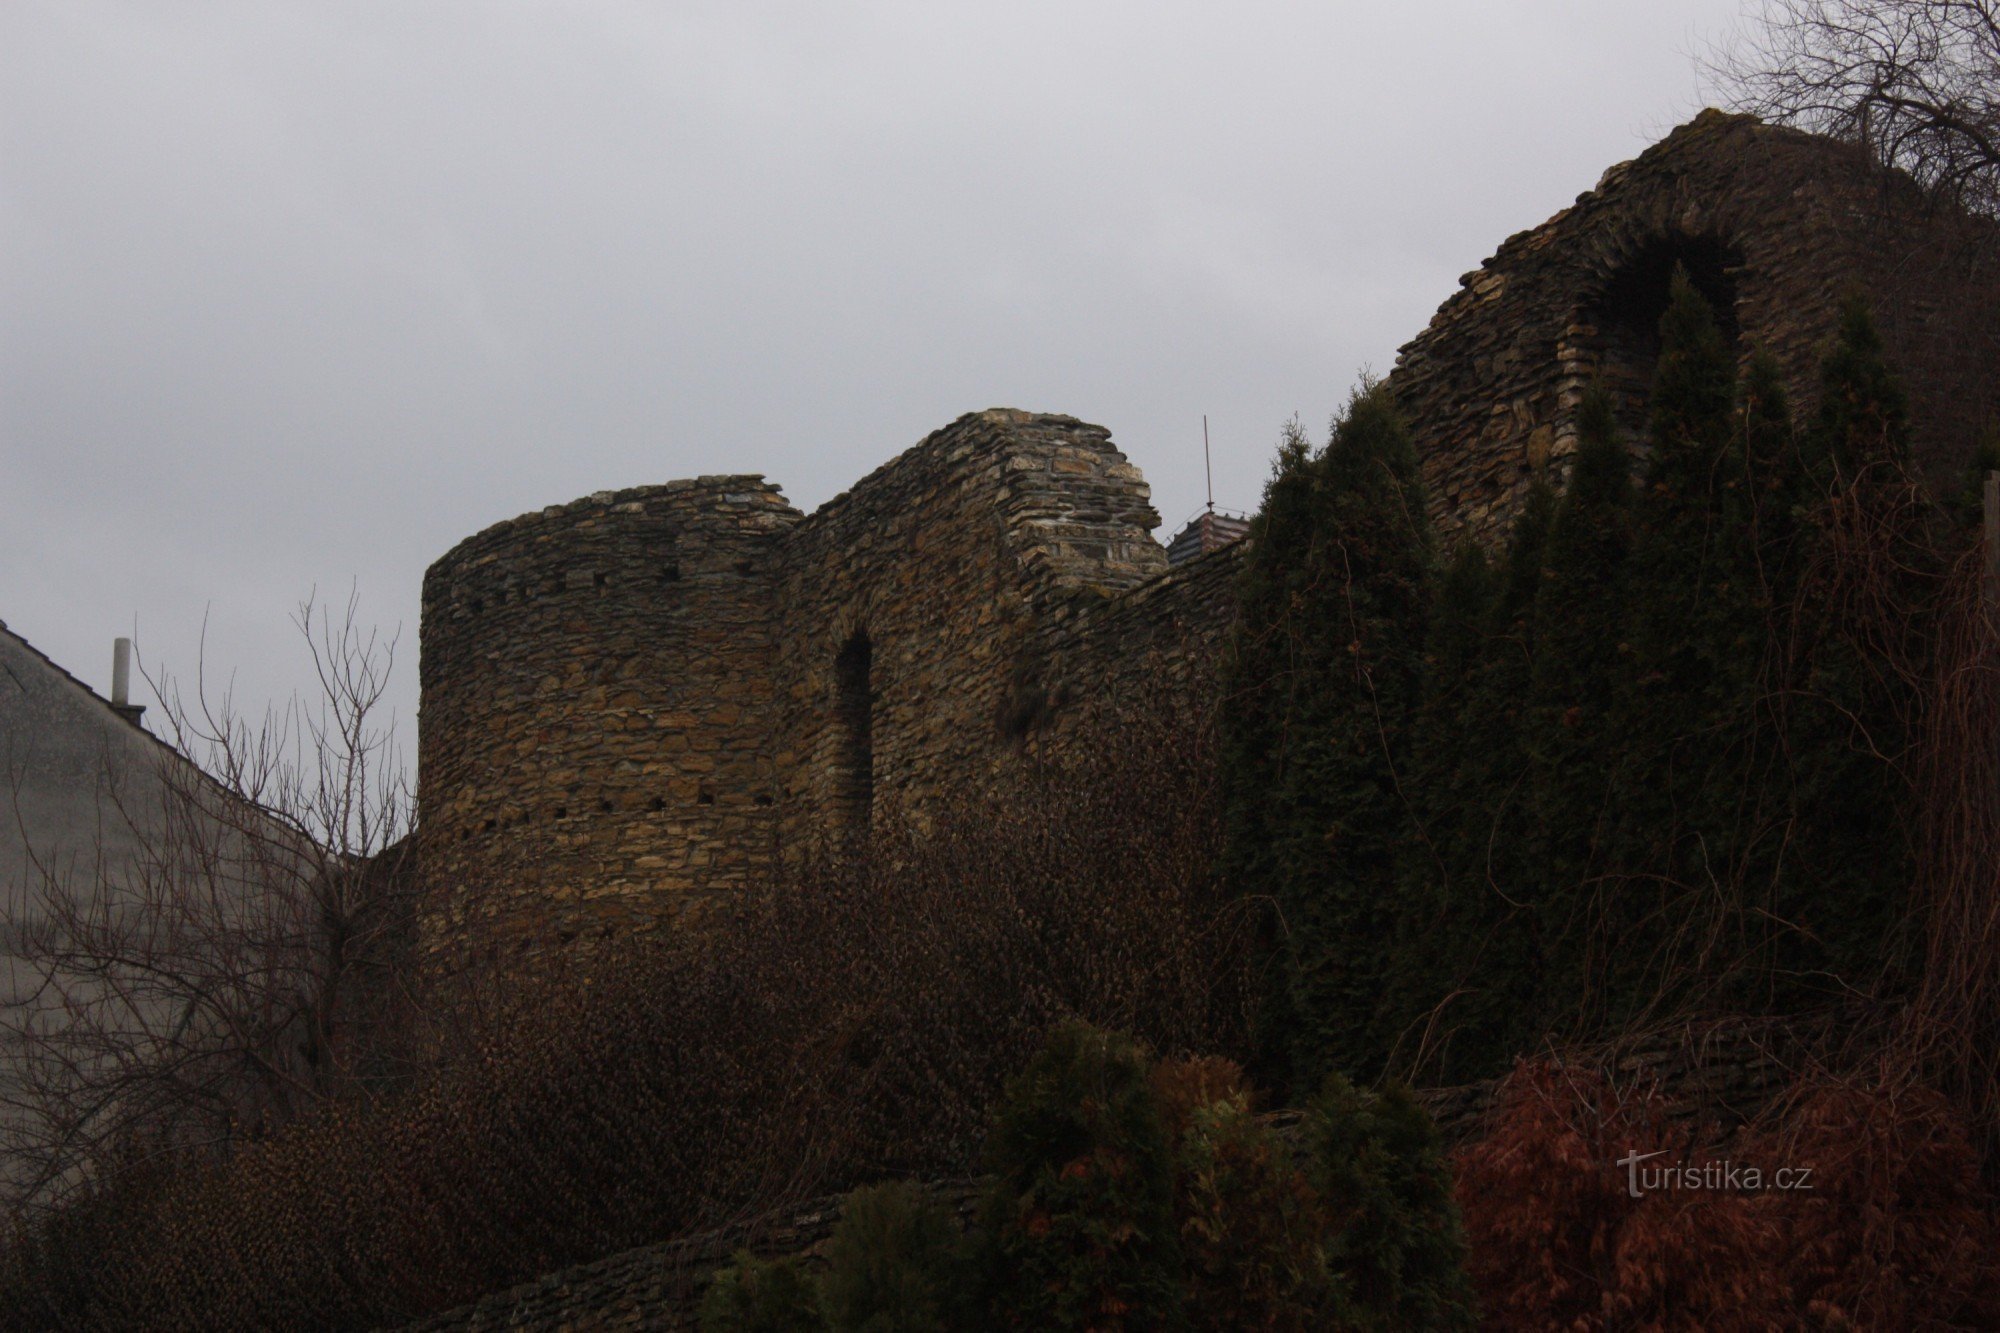 Rester av befästningssystemet från 15-talet i Přerov